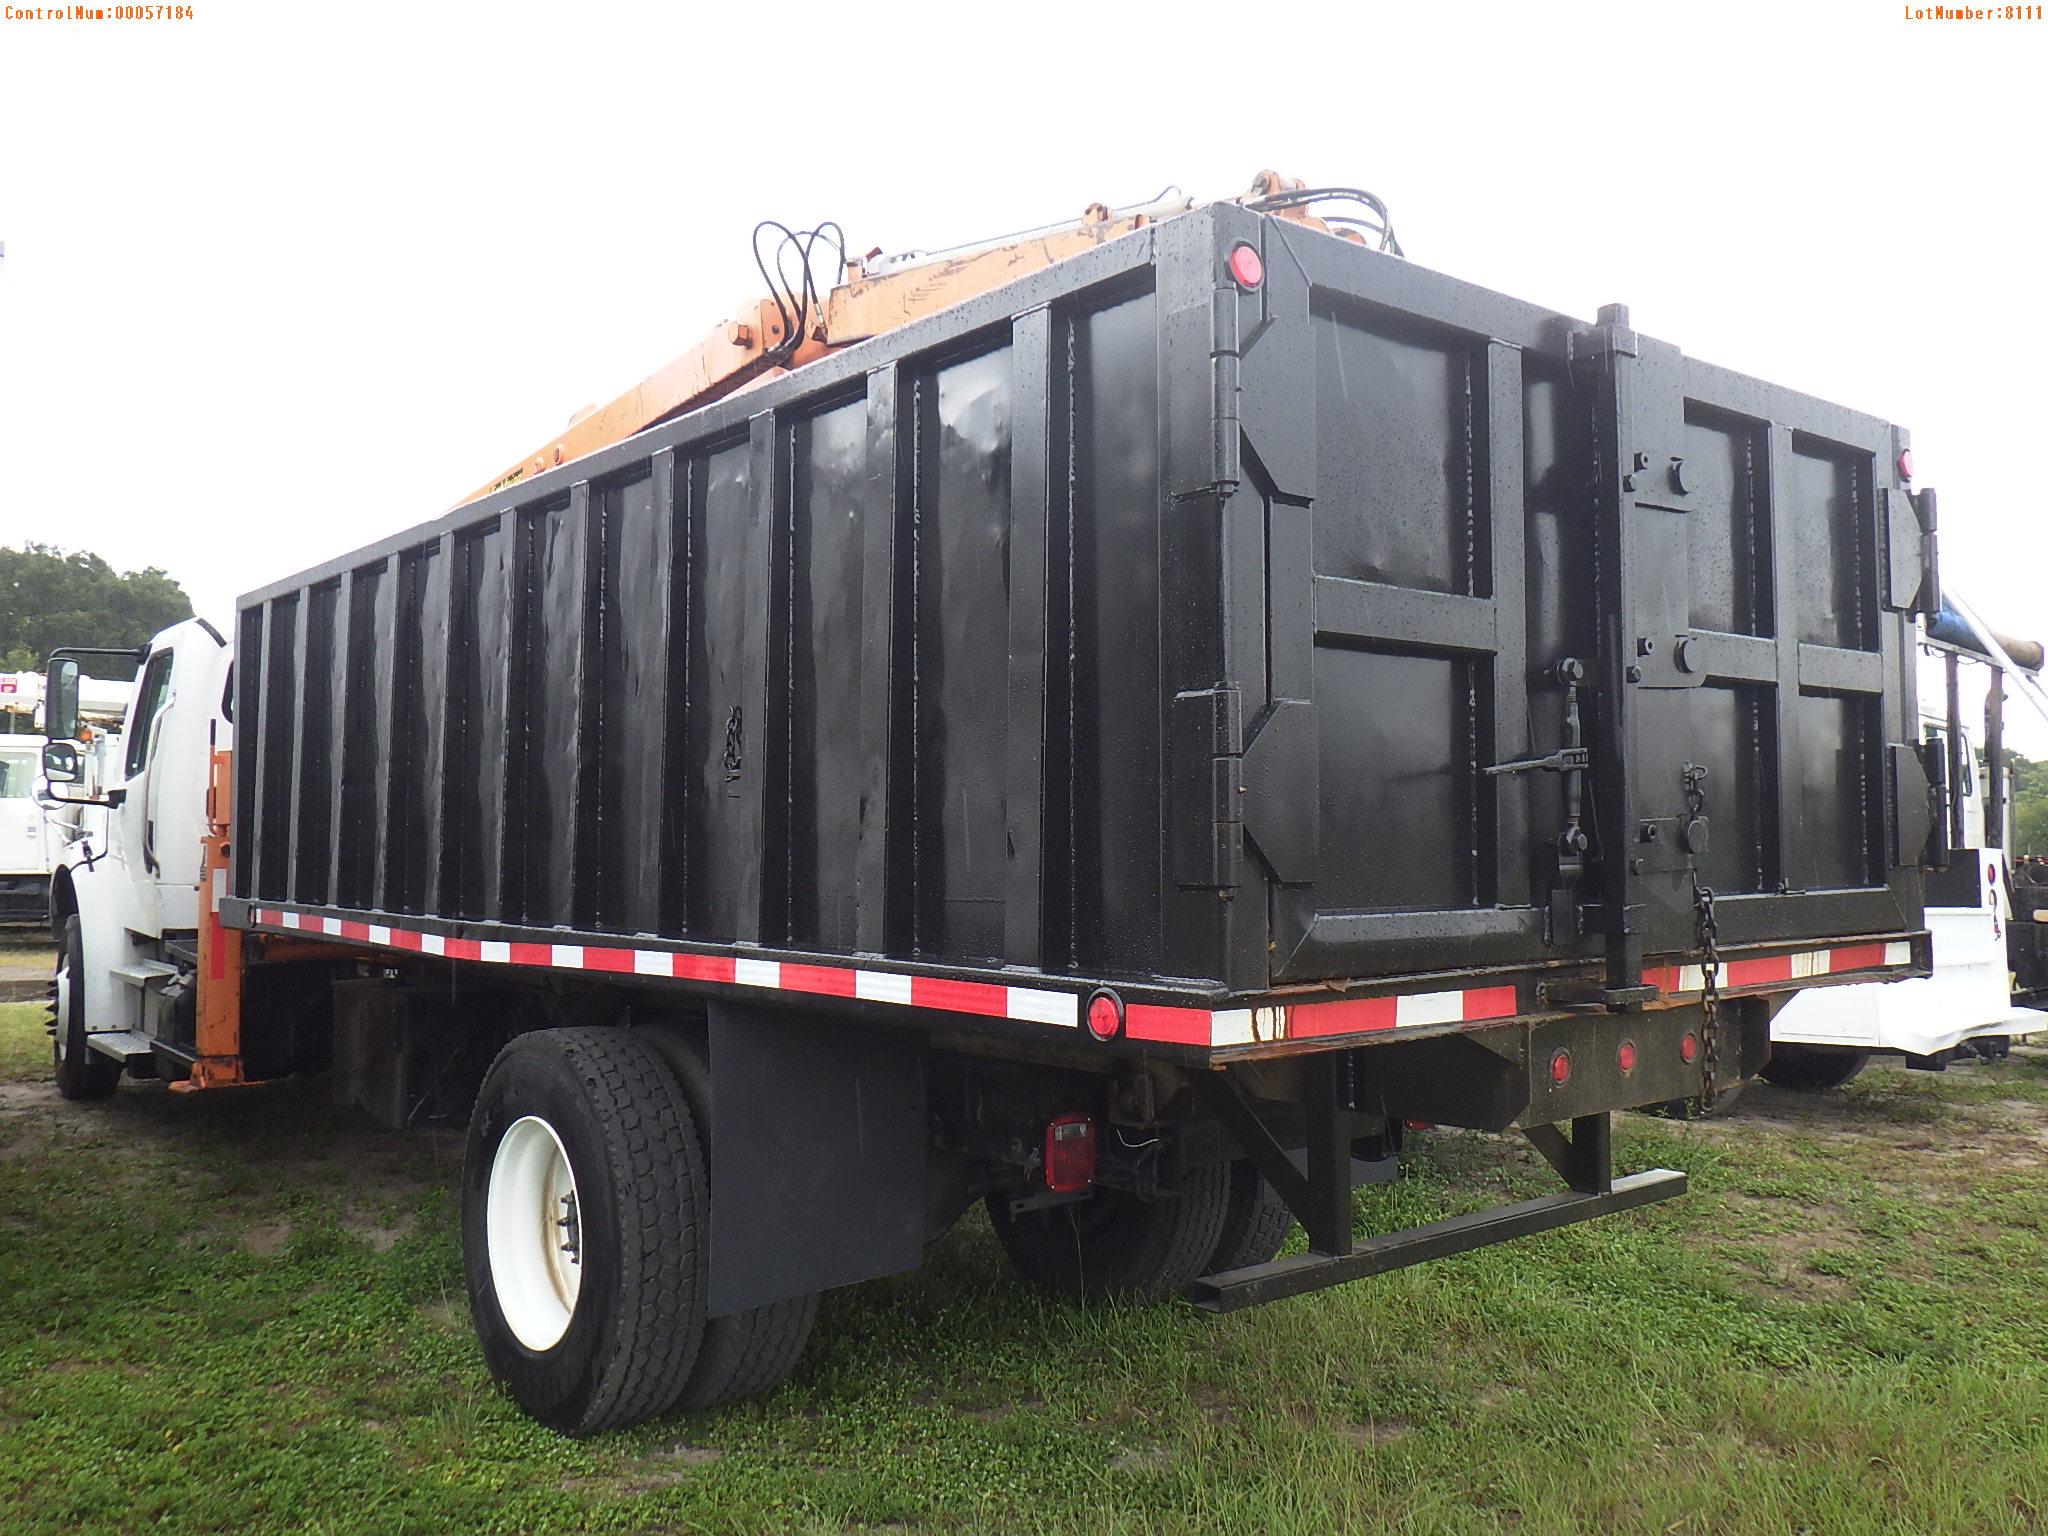 8-08111 (Trucks-Dump)  Seller:Private/Dealer 2013 FRHT M2-106